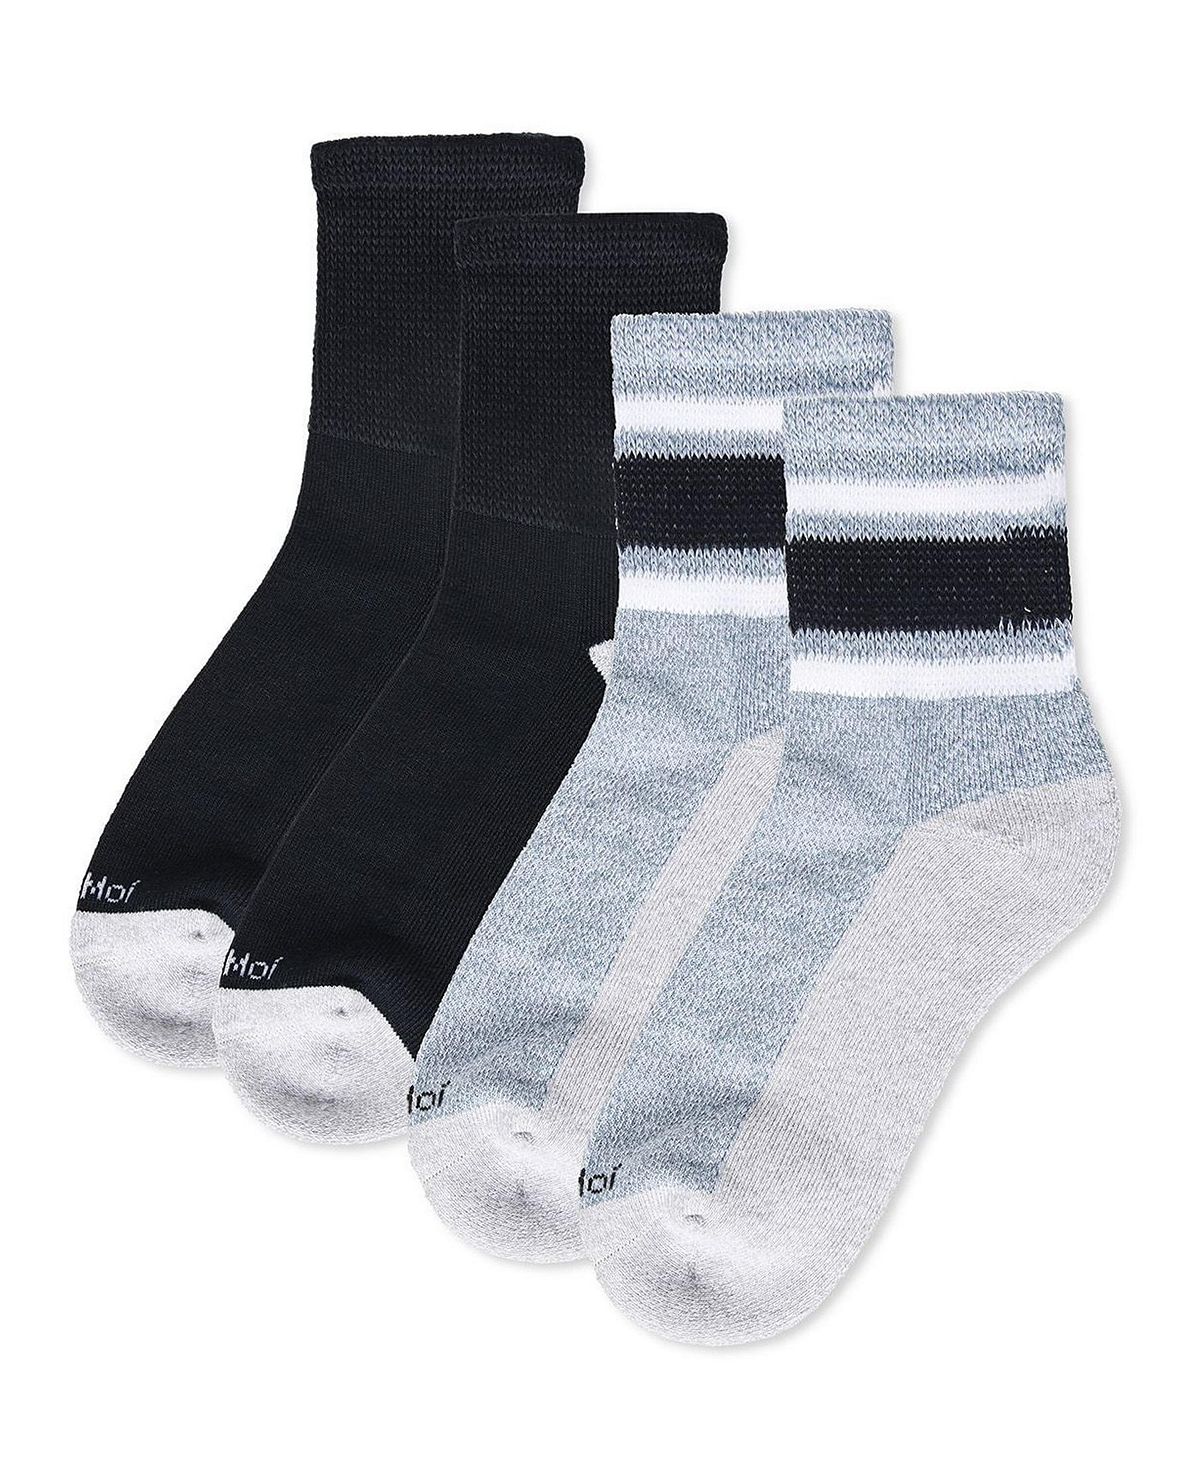 Мужские носки четверть в полоску в винтажном стиле для диабетиков, пара 2 шт. MeMoi